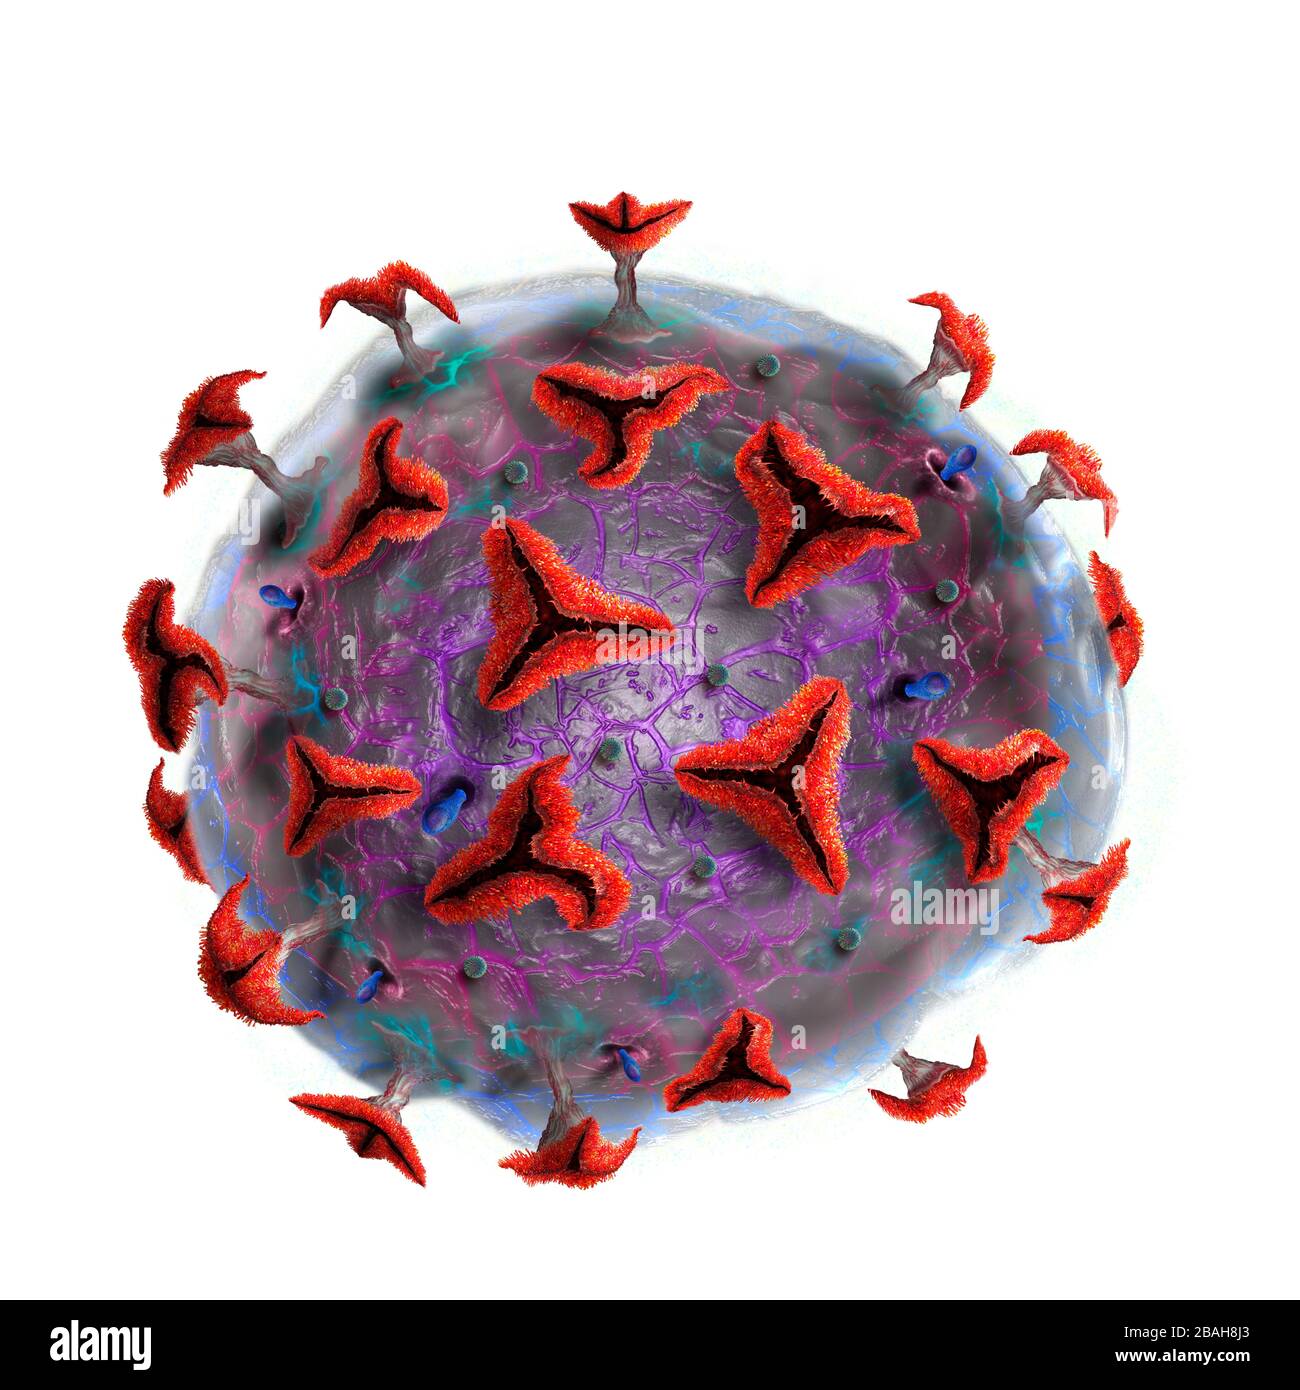 Coronavirus particle, illustration Stock Photo